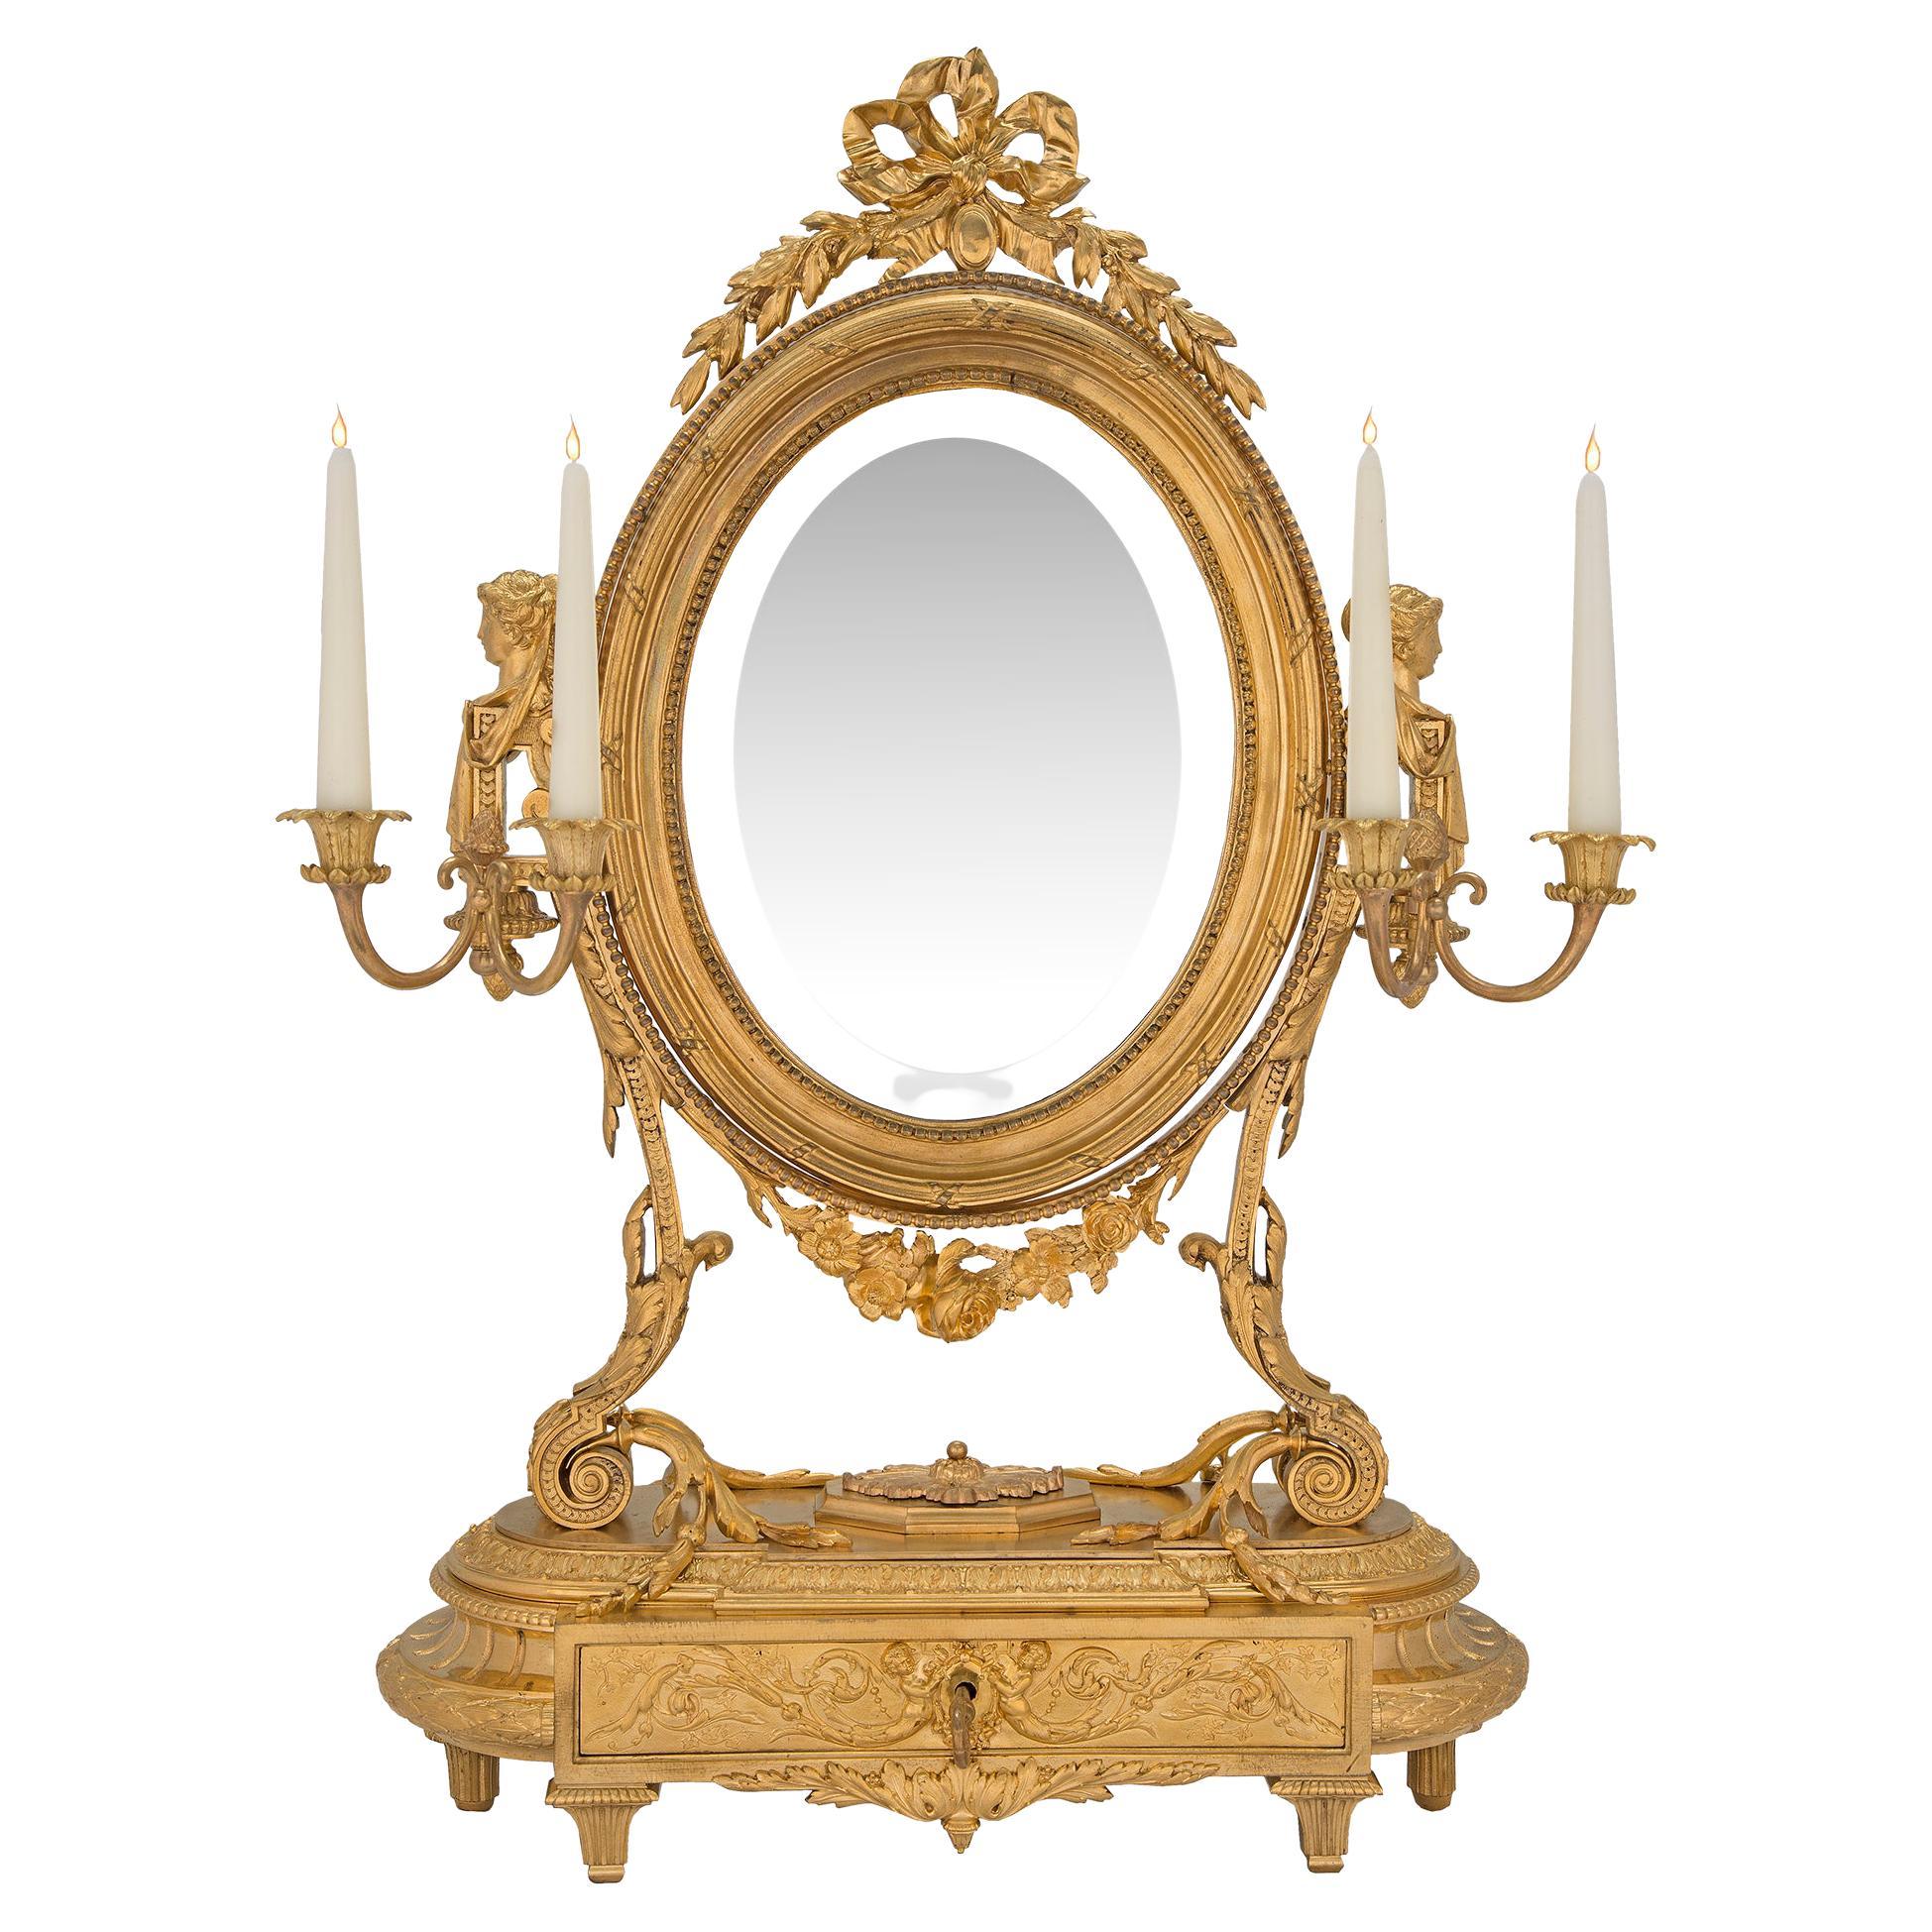 Miroir de coiffeuse en bronze doré de style Louis XVI du XIXe siècle français